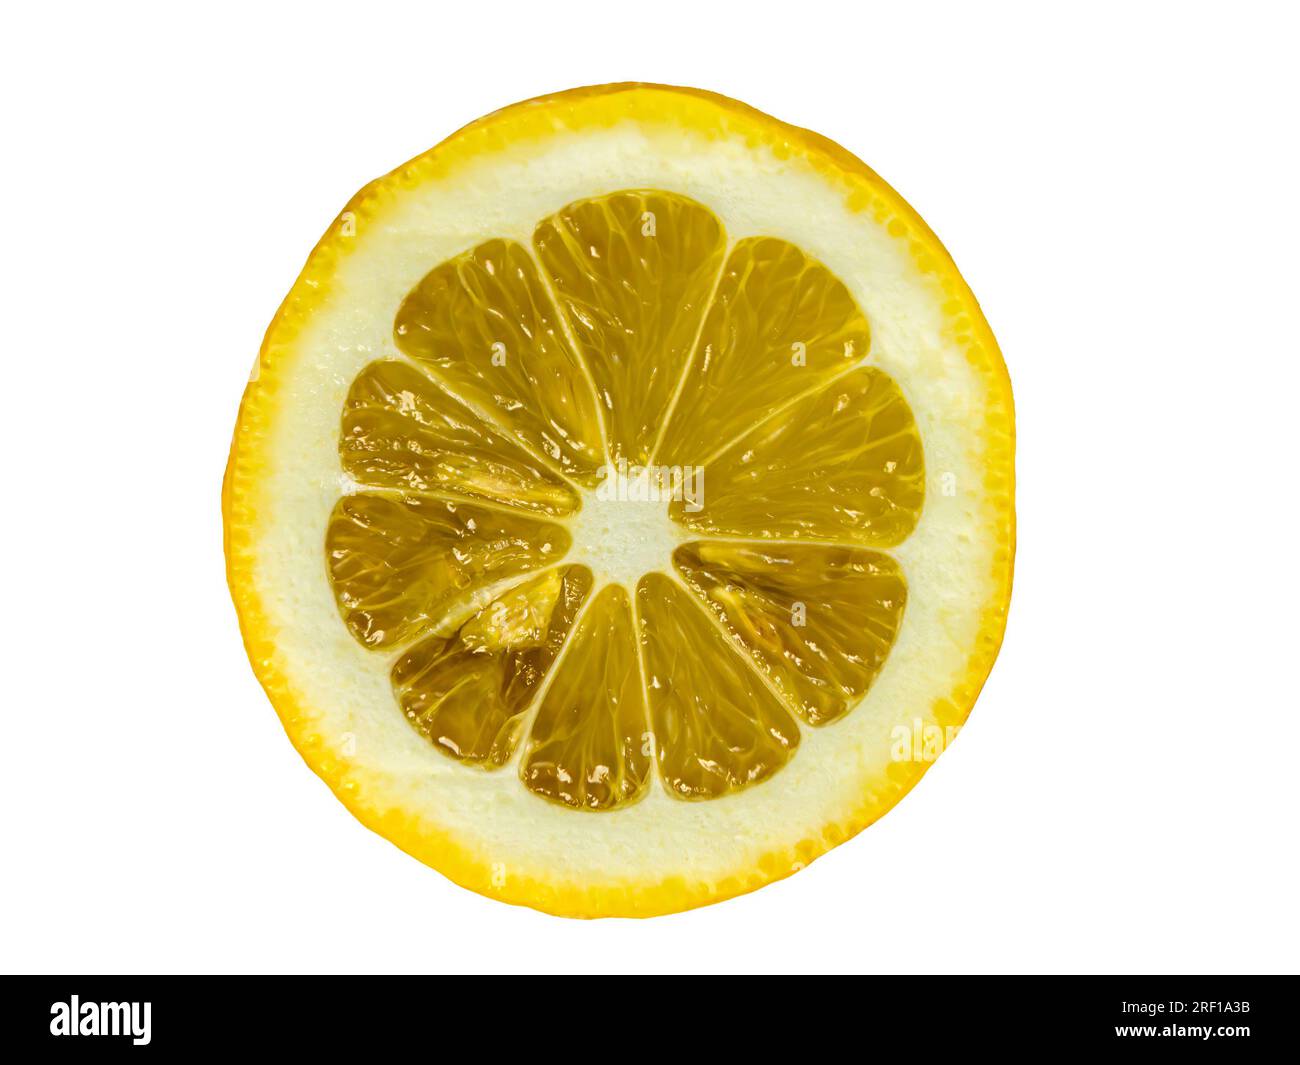 Primo piano vivace e rinfrescante di una succosa fetta di limone, perfetta per aggiungere un tocco di freschezza a qualsiasi design. Isolato su sfondo bianco. Foto Stock